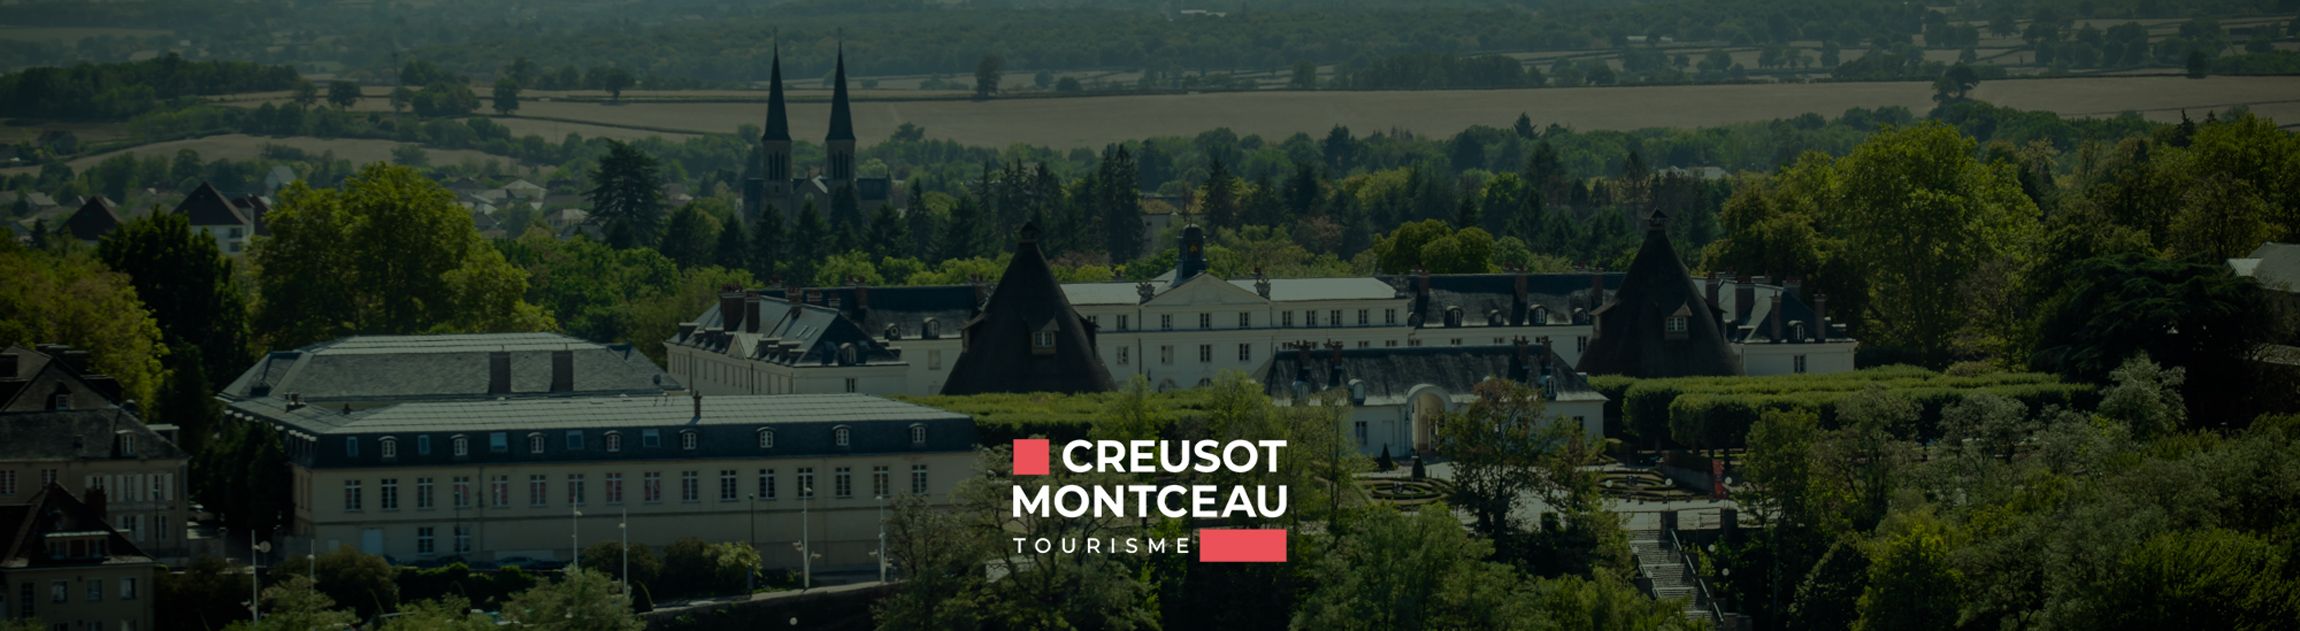 Office de tourisme Creusot Montceau